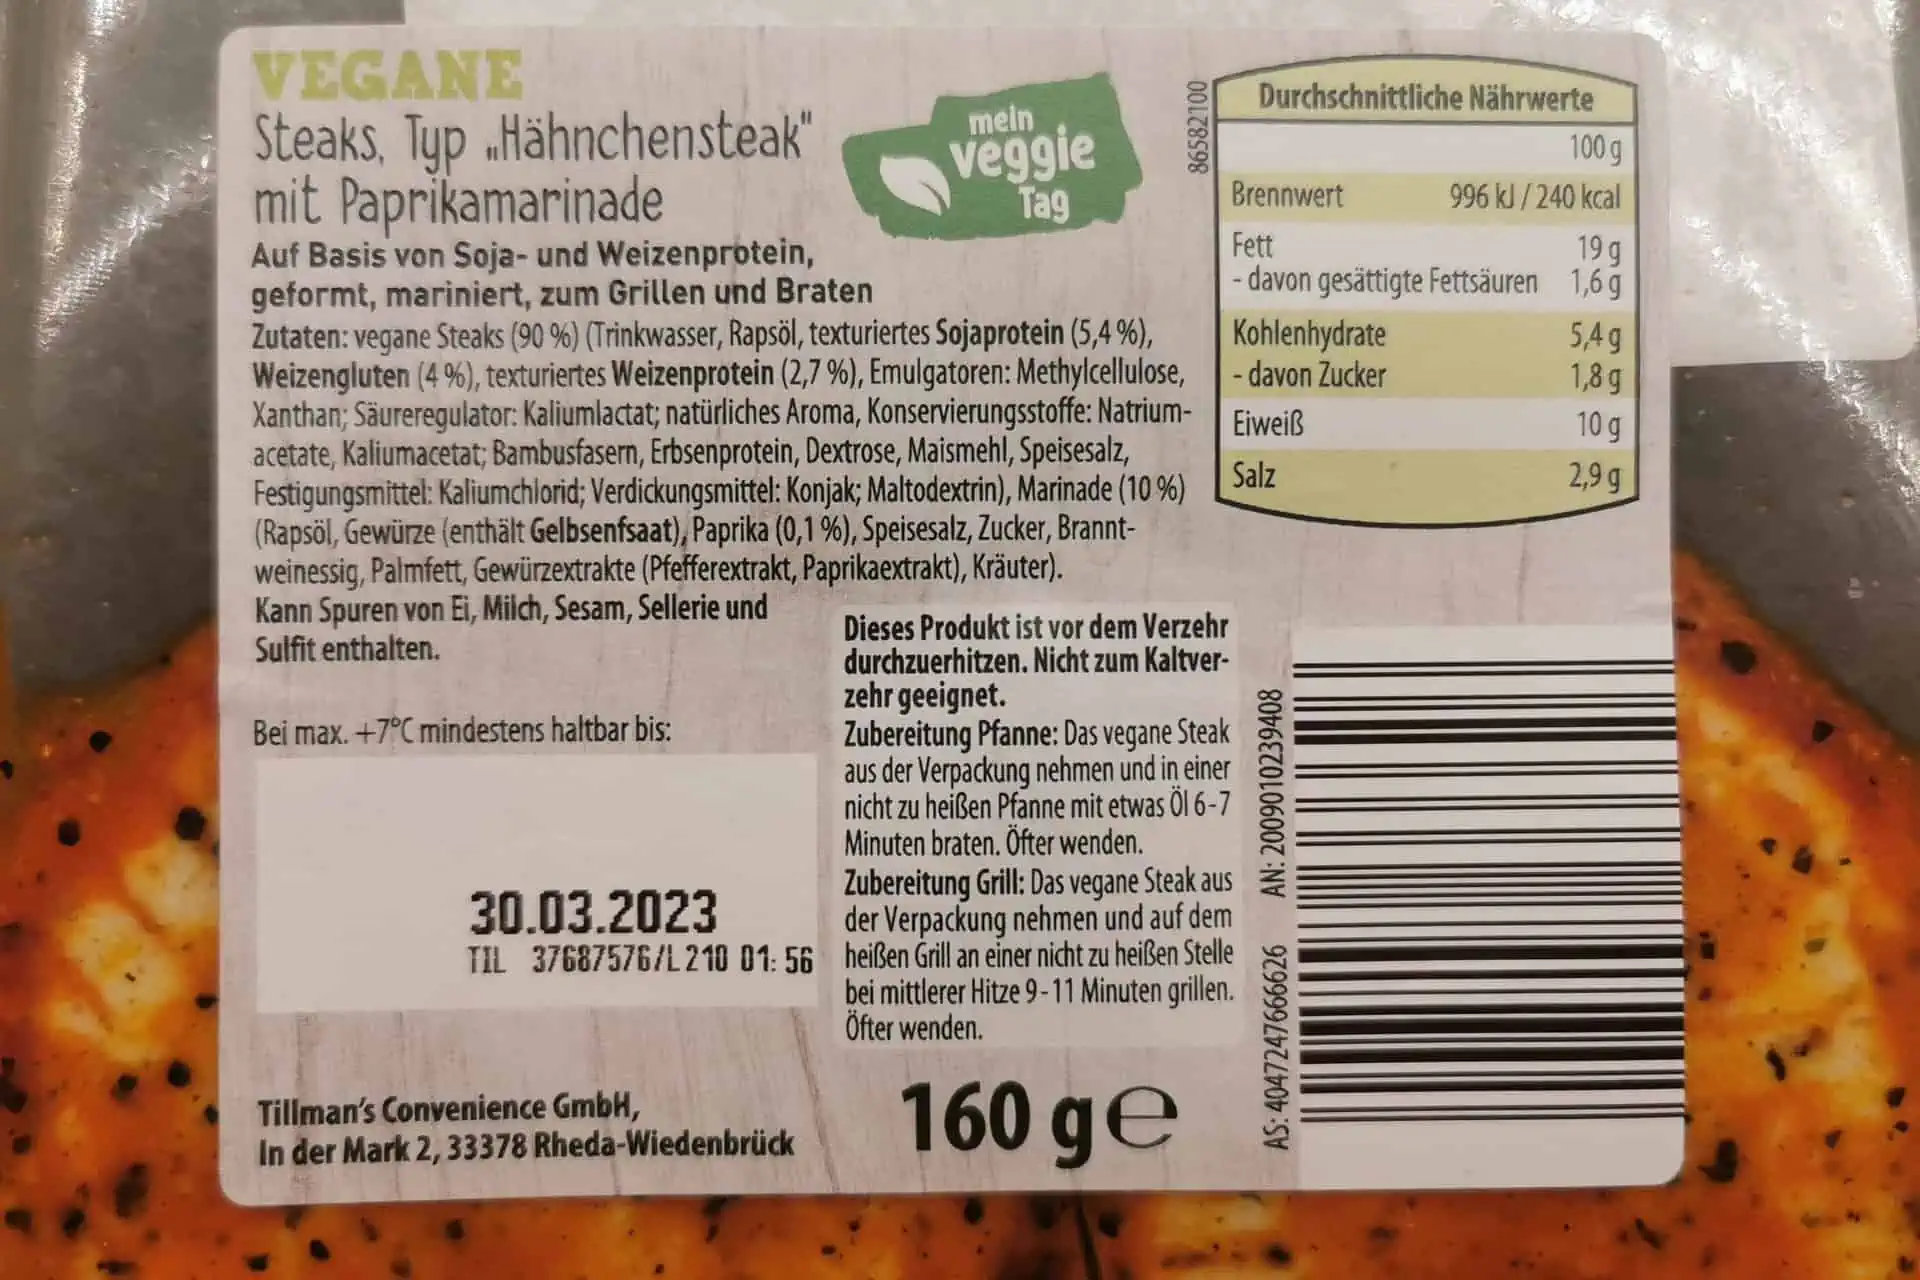 Aldi Nord - Vegane Hähnchensteaks Paprika Zutaten & Inhaltsstoffe Nährwerte